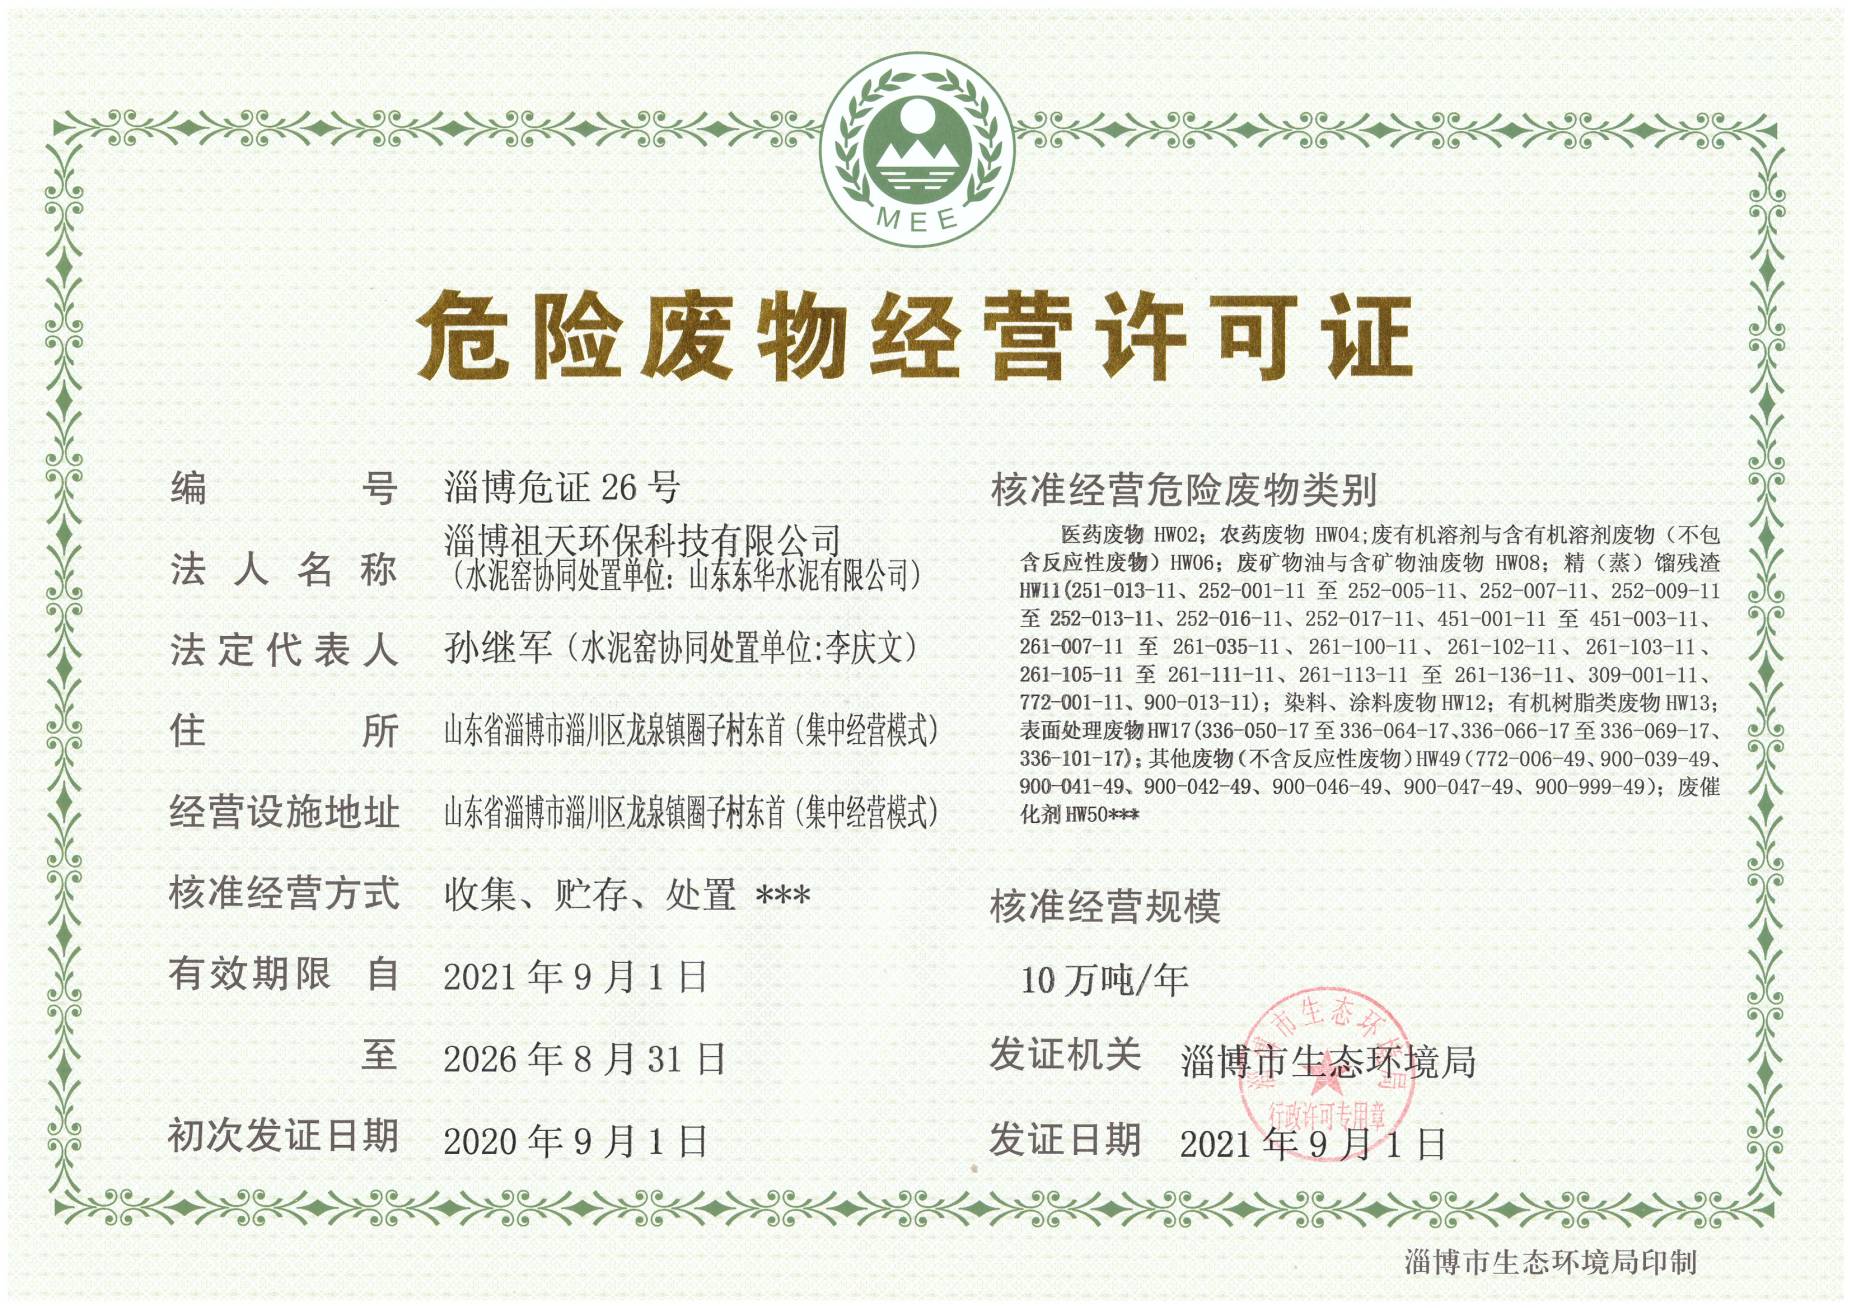 淄博祖天環保有限公司喜獲五年危廢處置正式許可證